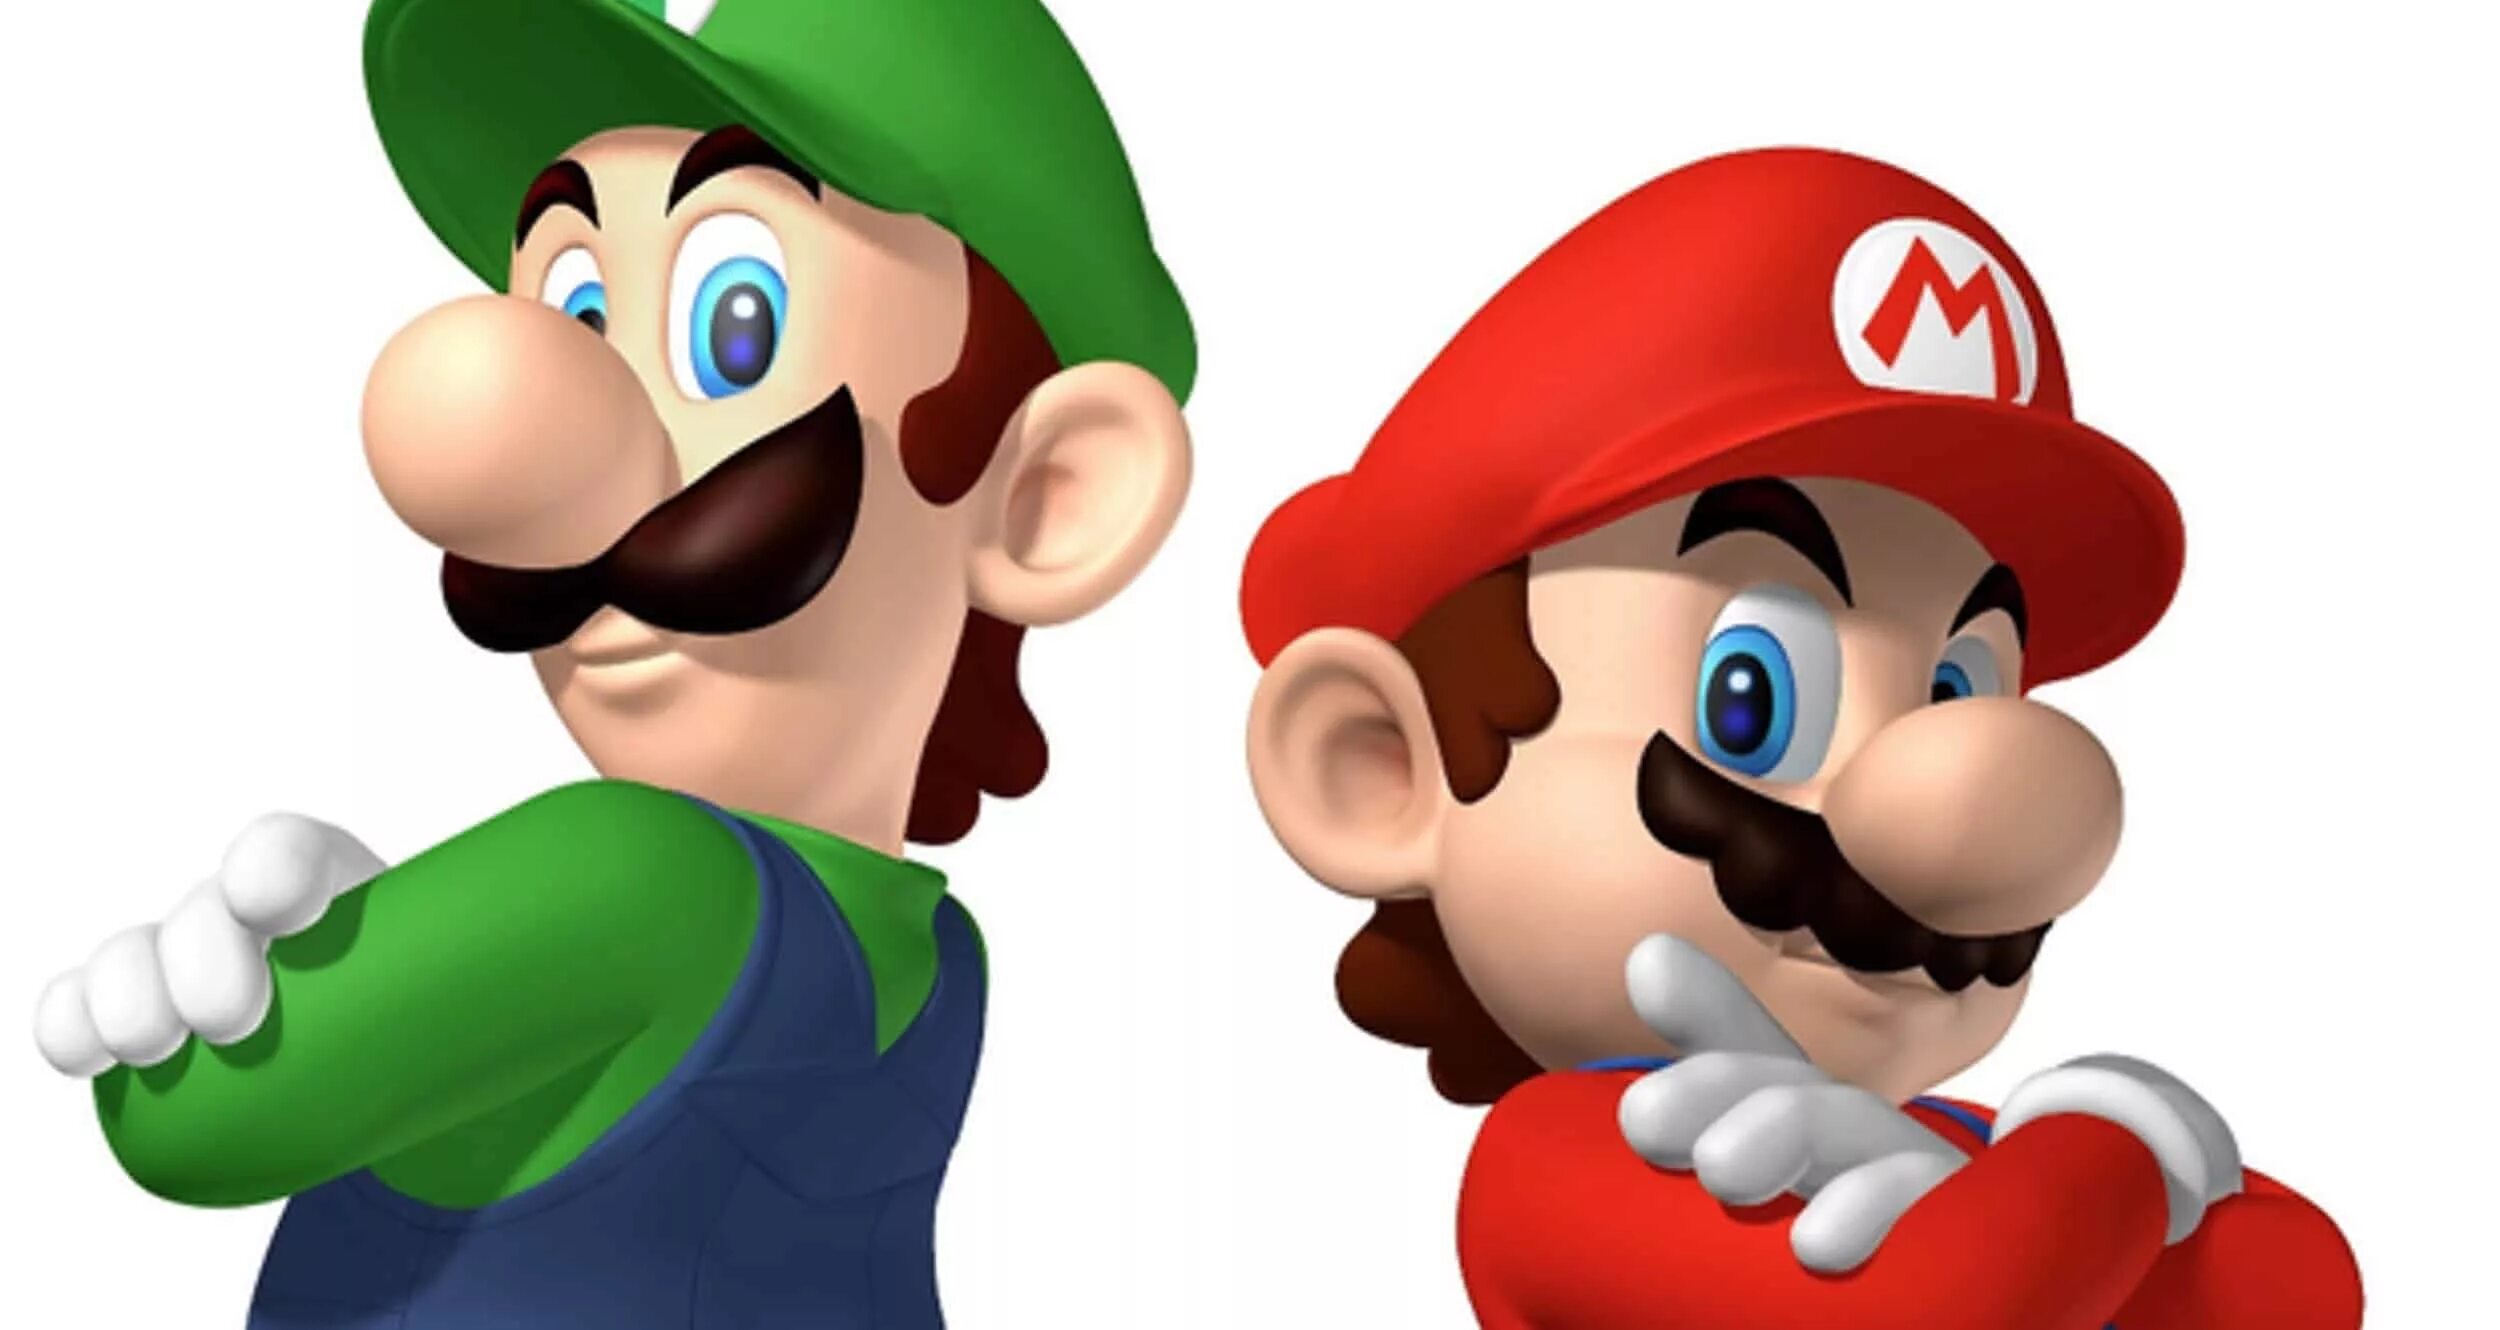 Mario bros special. Марио 1983. Супер Марио и Луиджи. Луиджи БРОС. Супер братья Марио Луиджи.